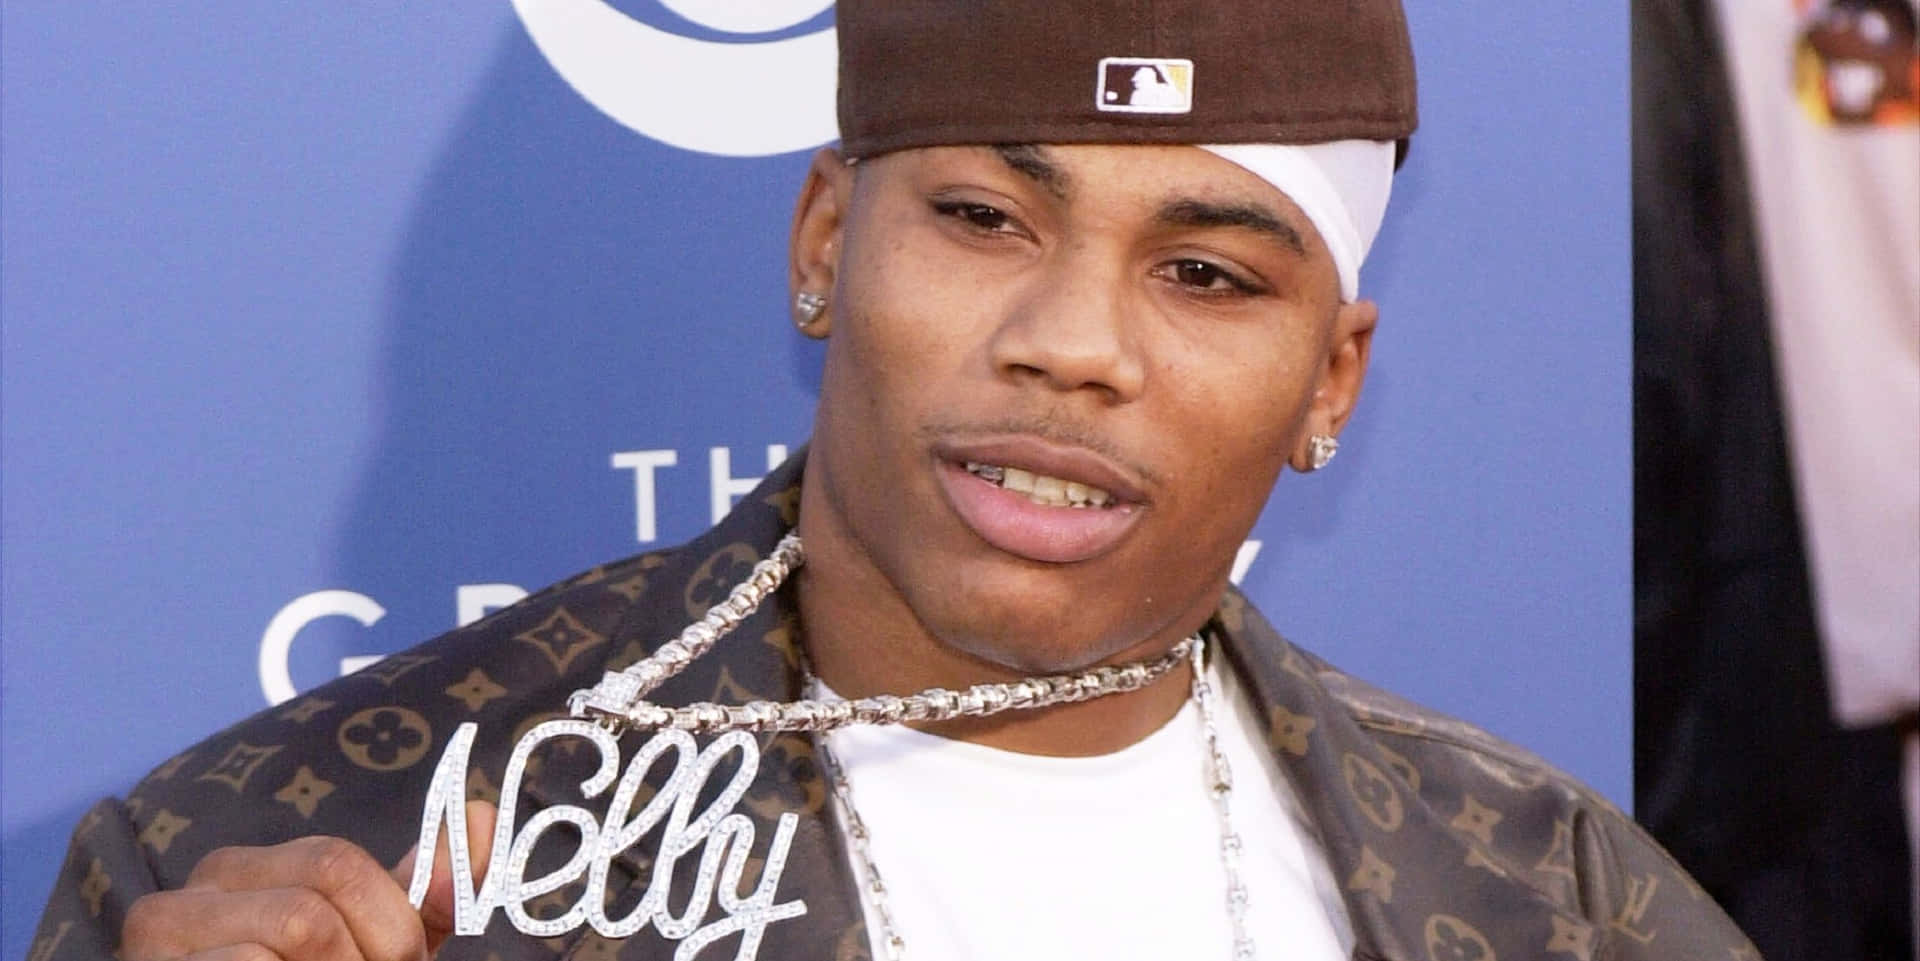 Nellydurante Los Premios Grammy 2003. Fondo de pantalla